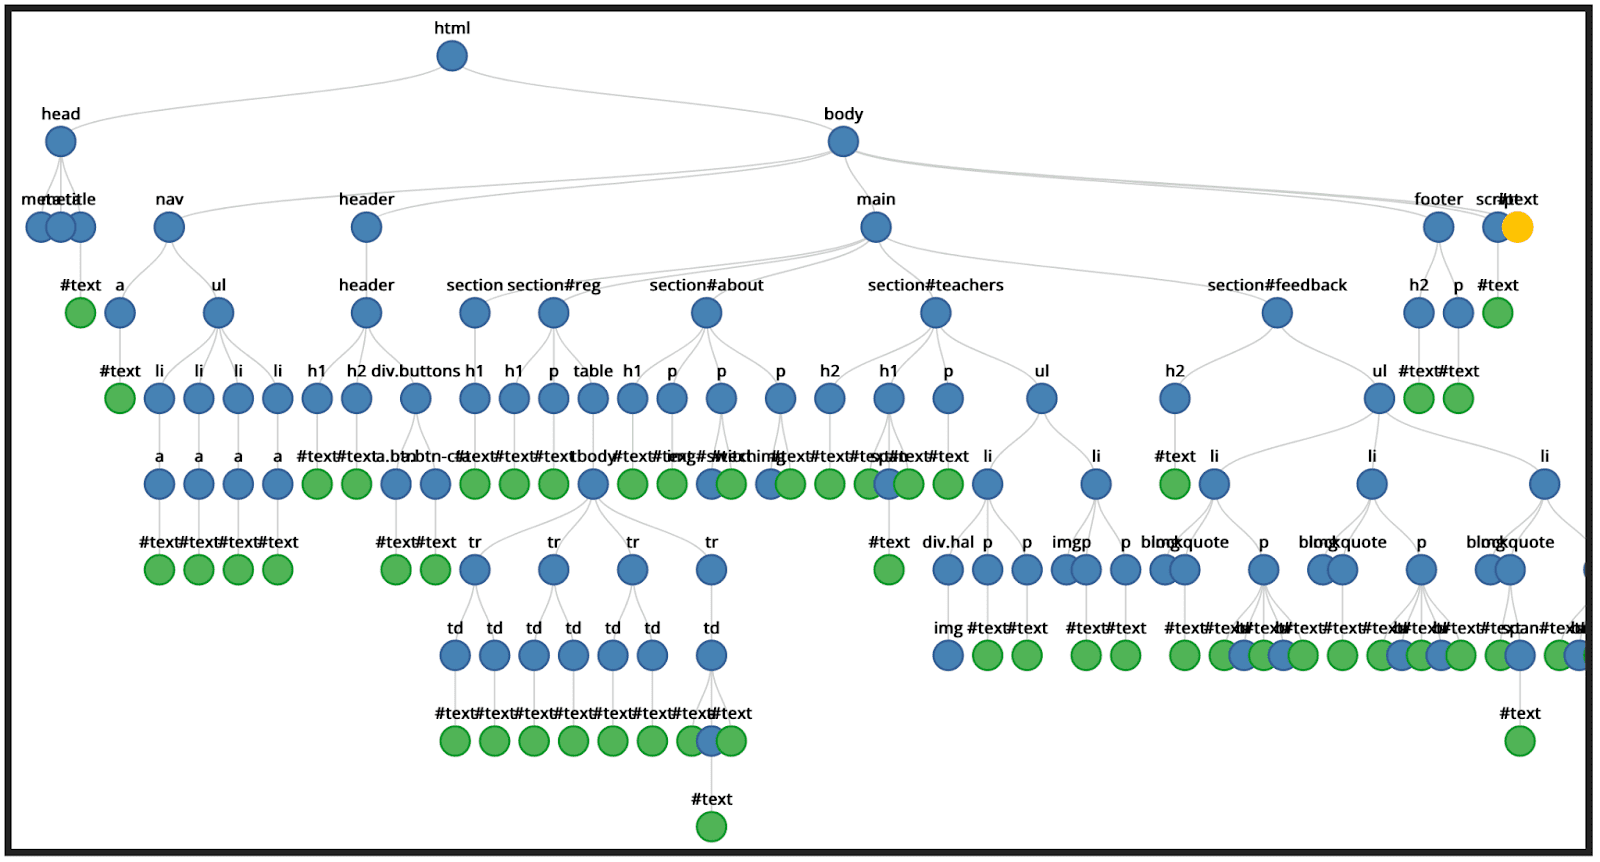 درخت گره MLW عناصر و گره های متن را نشان می دهد.